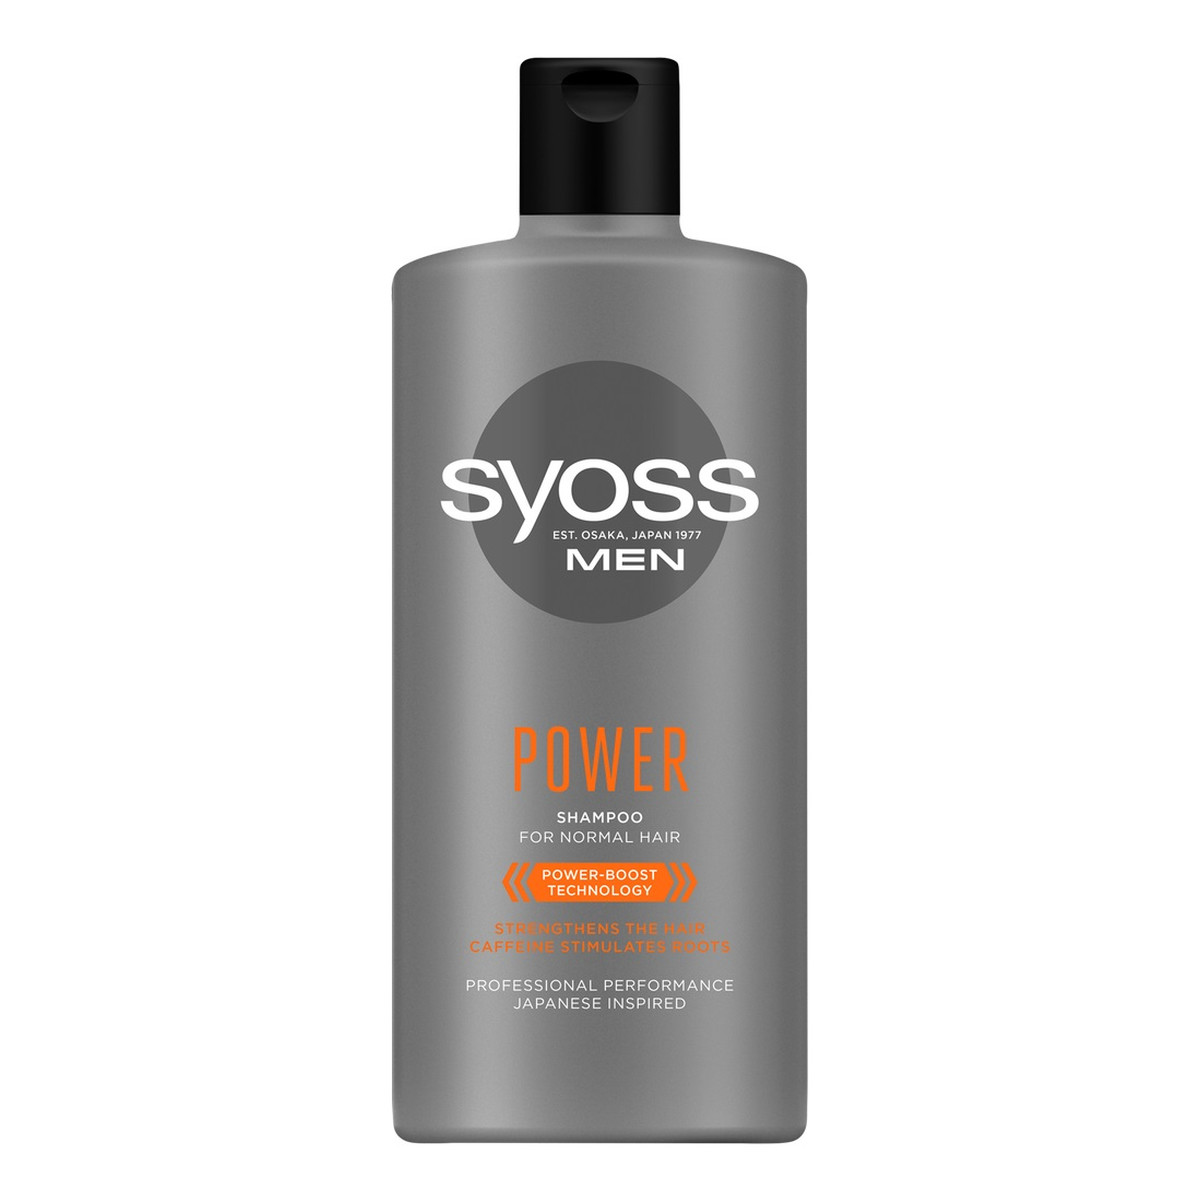 Syoss Men power shampoo szampon do włosów normalnych 440ml